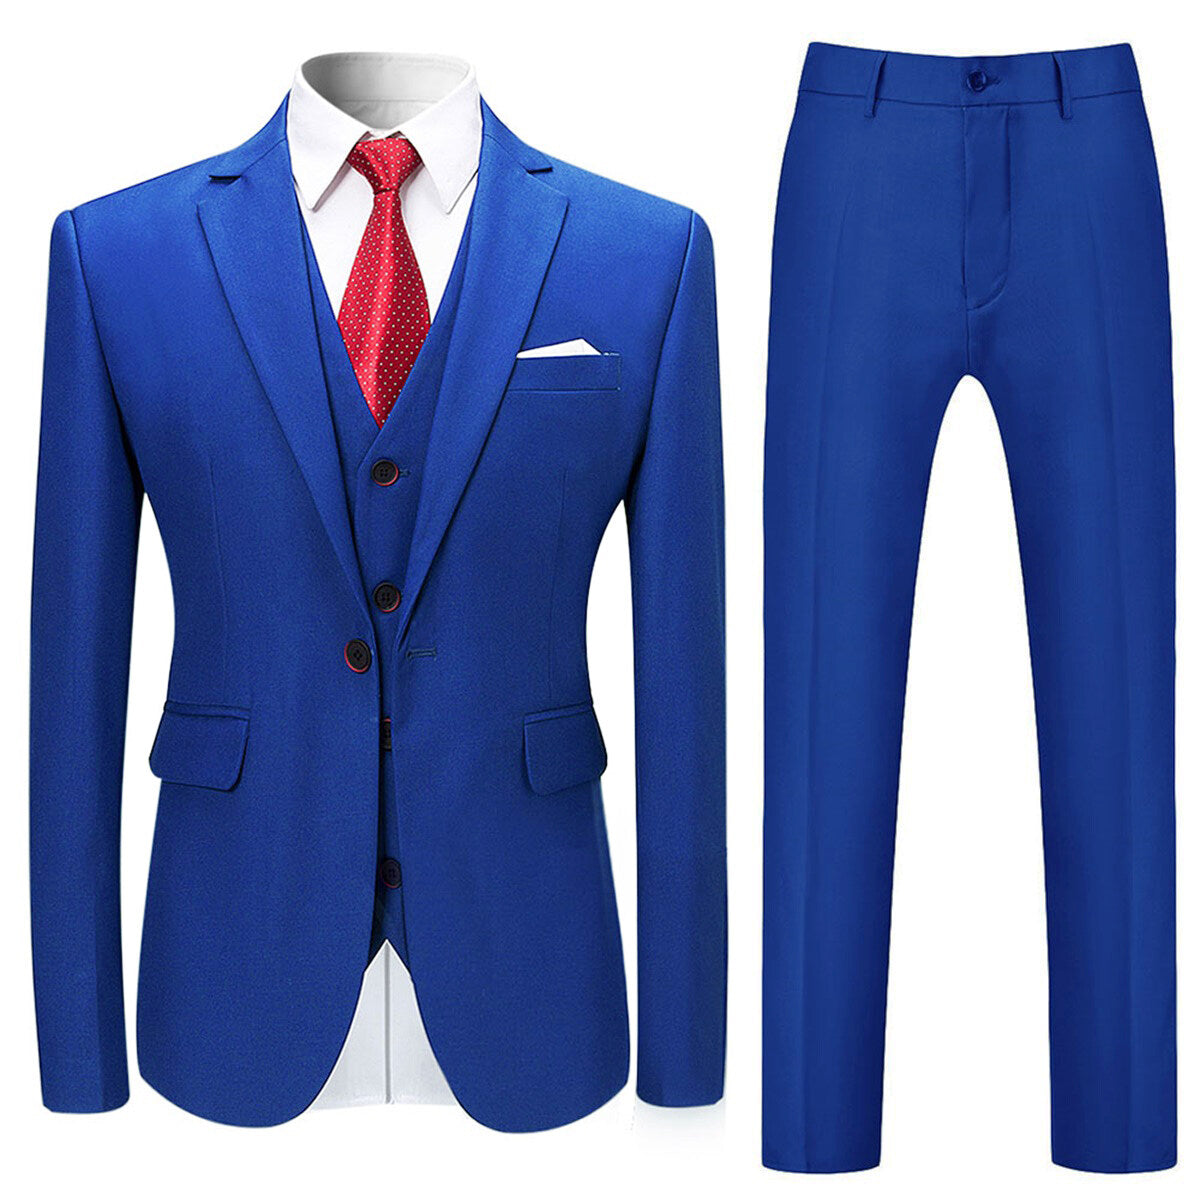 3-Piece Slim Fit Solid Color Jacket Smart Wedding Formal Suit Blue